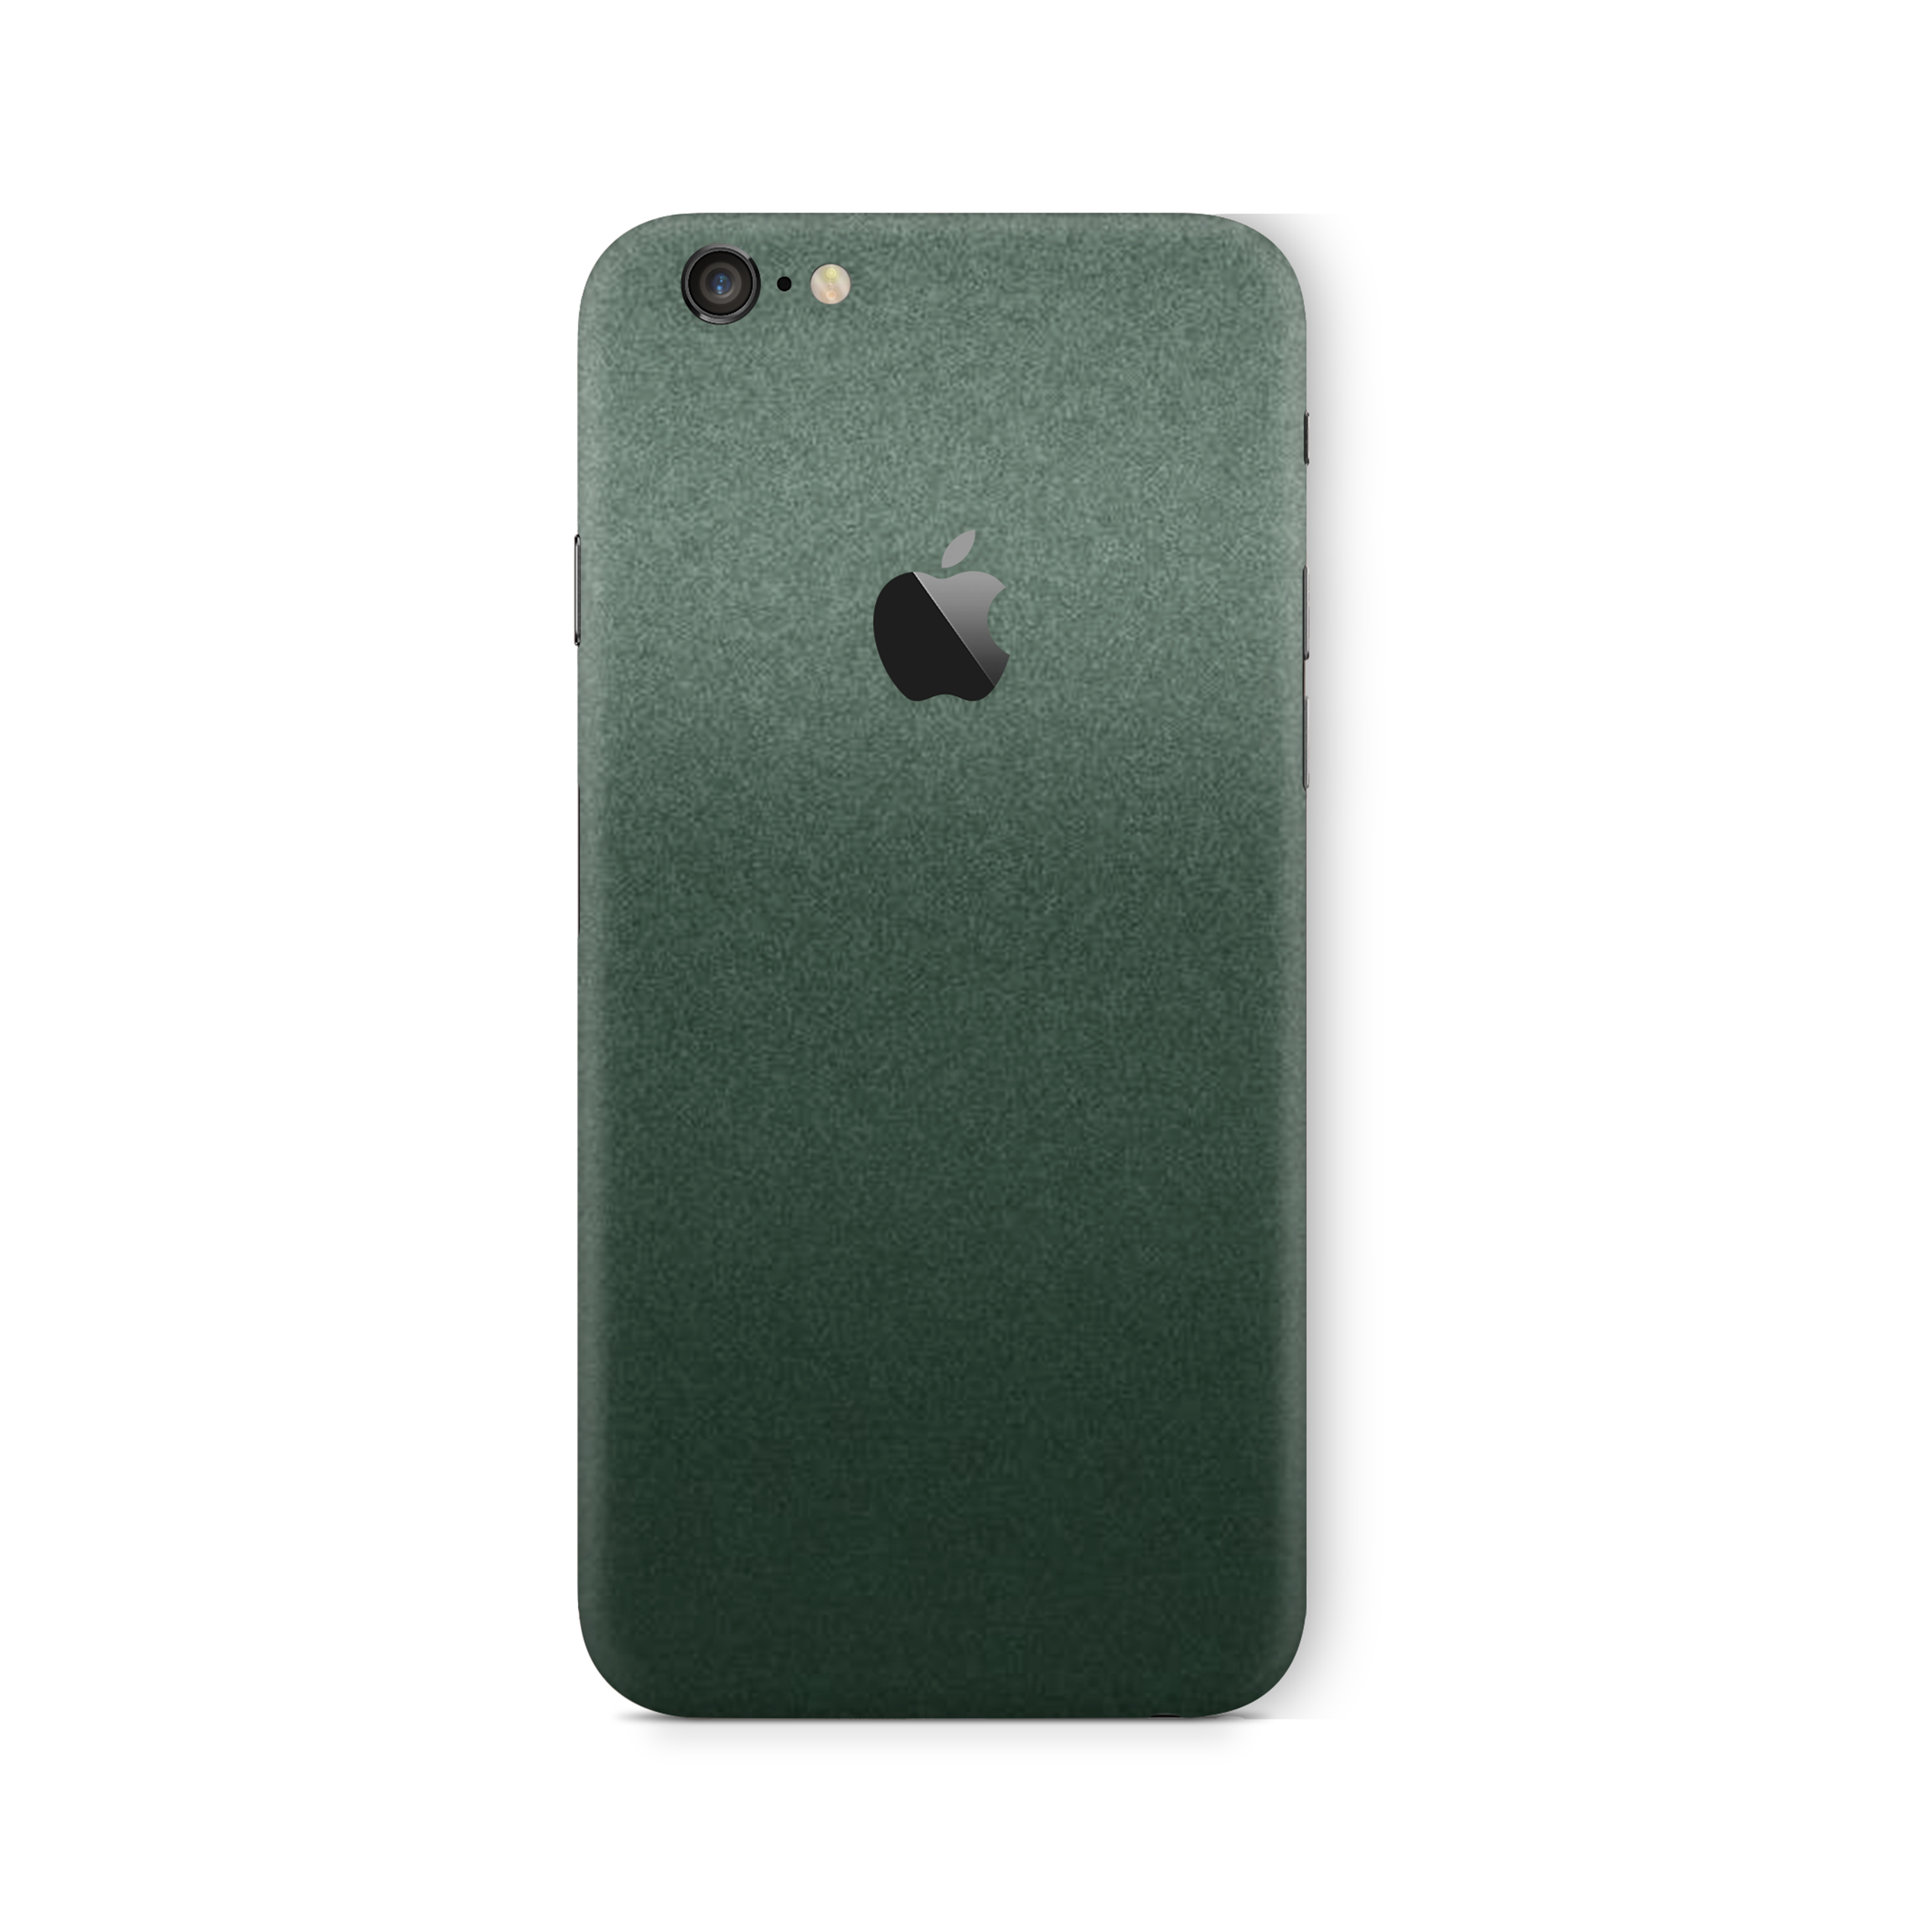 Pine Green Metallic Skin For iPhone 6/6s